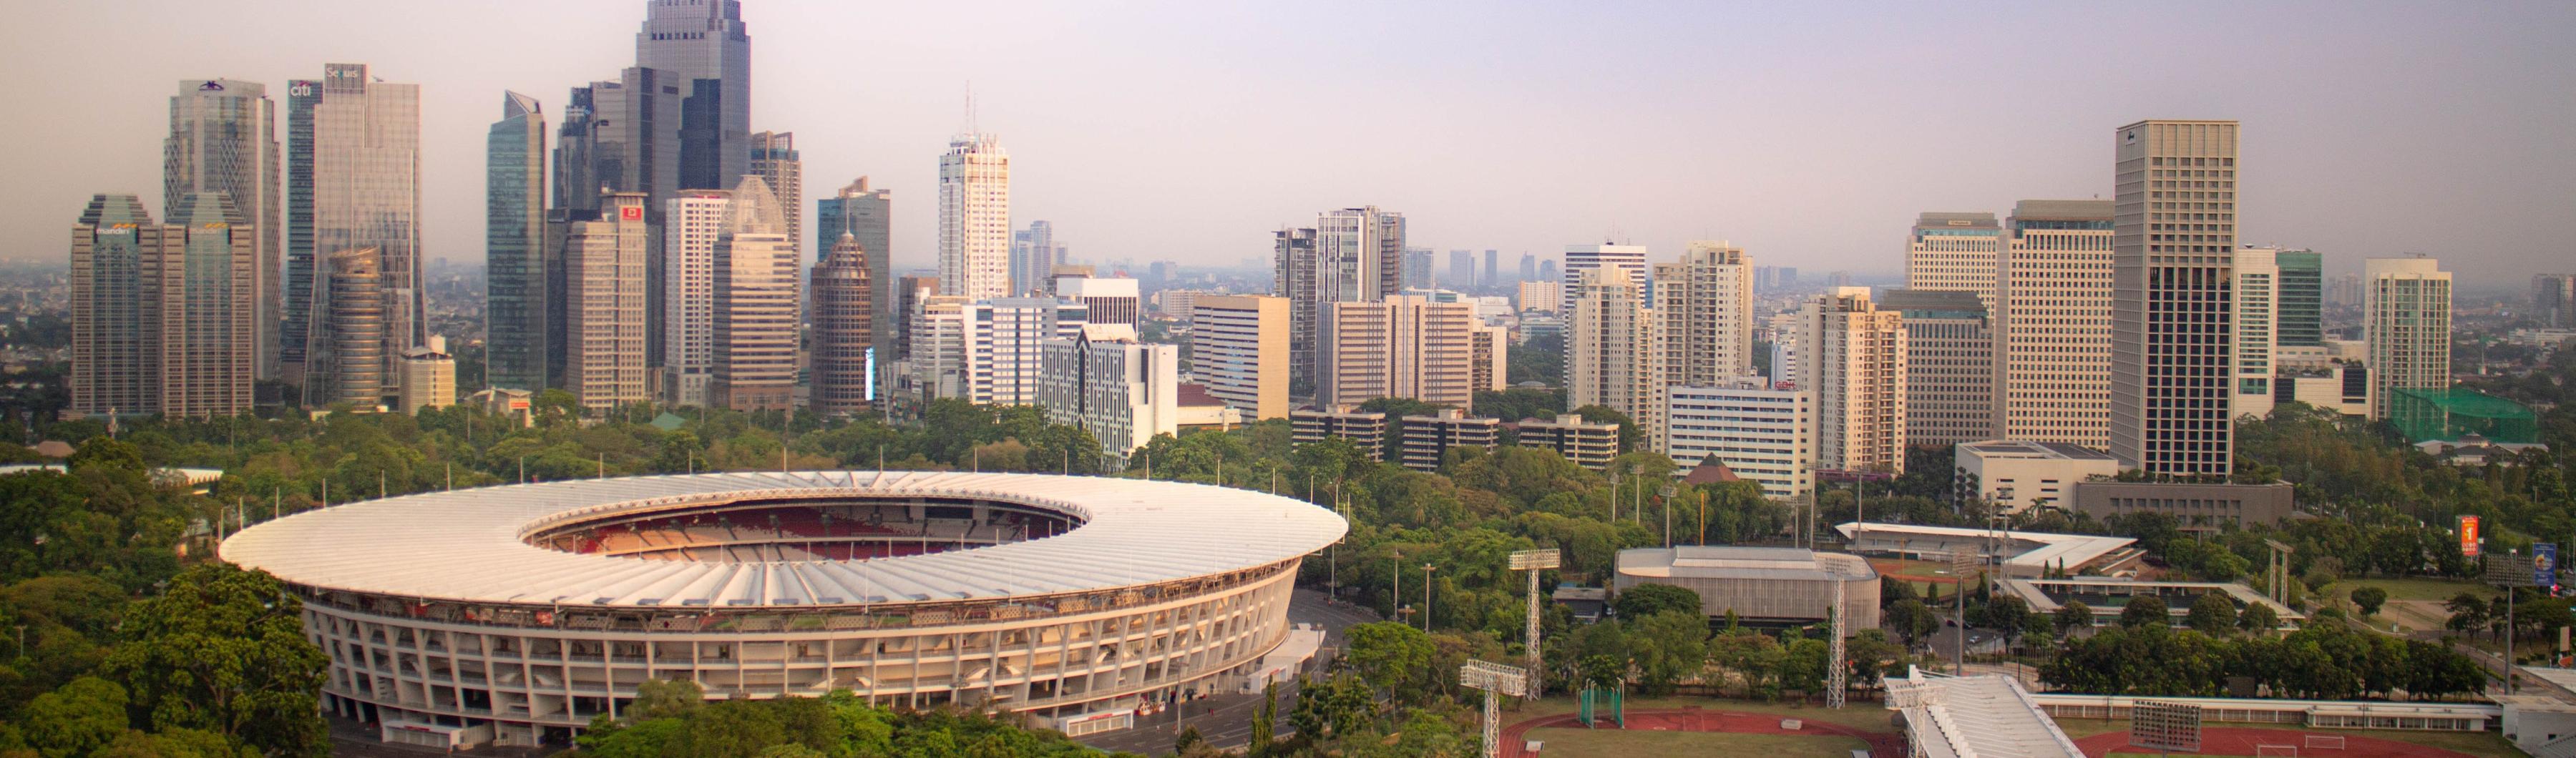 Vista do Estádio Gelora Bung Karno, em Jacarta, cercado por árvores e pelo horizonte da cidade